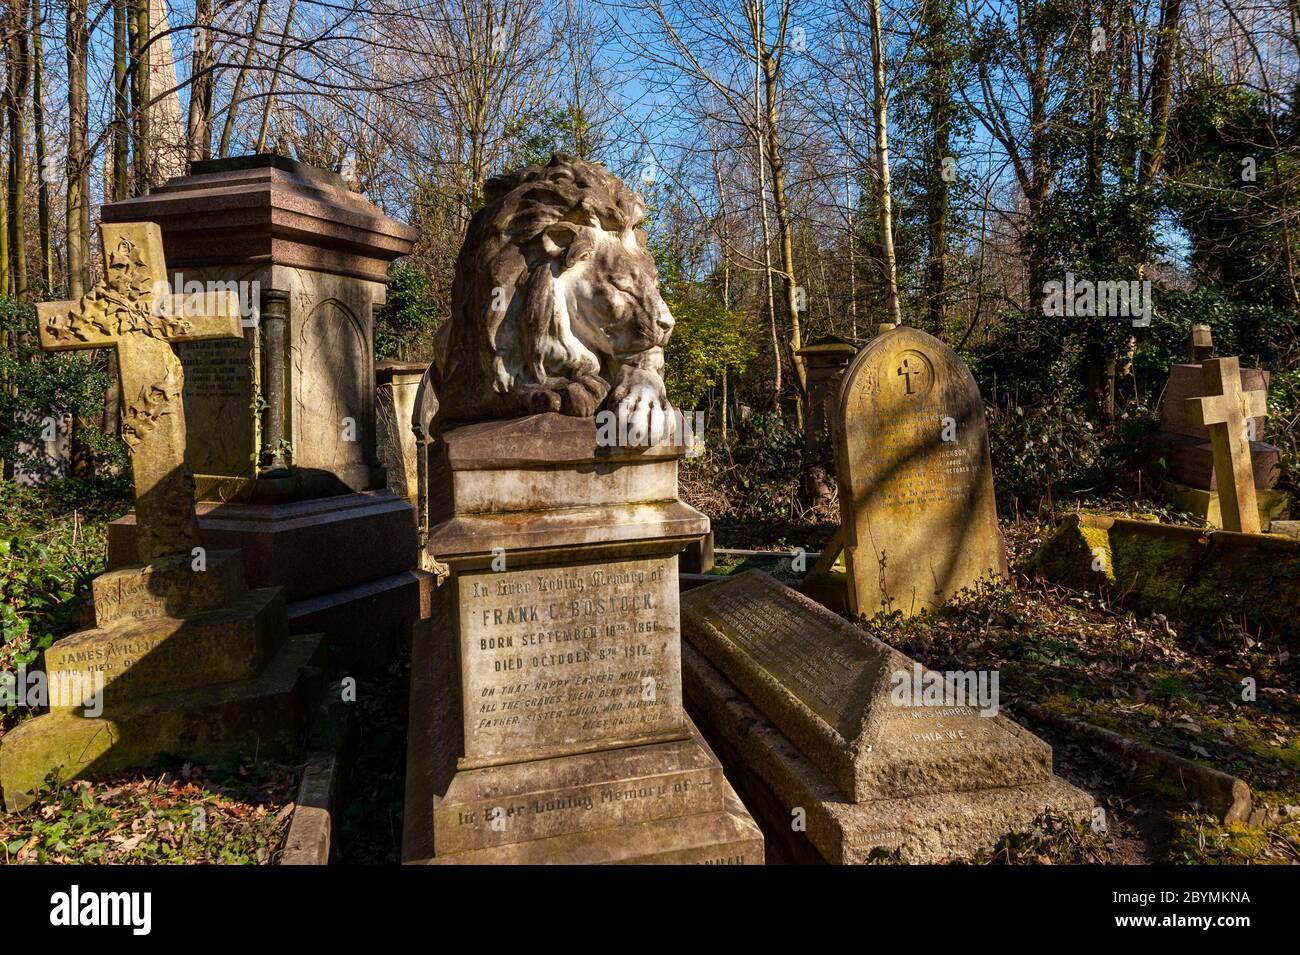 El león de la bolsa en el cementerio de Abney Park, Londres, Reino Unido Foto de stock